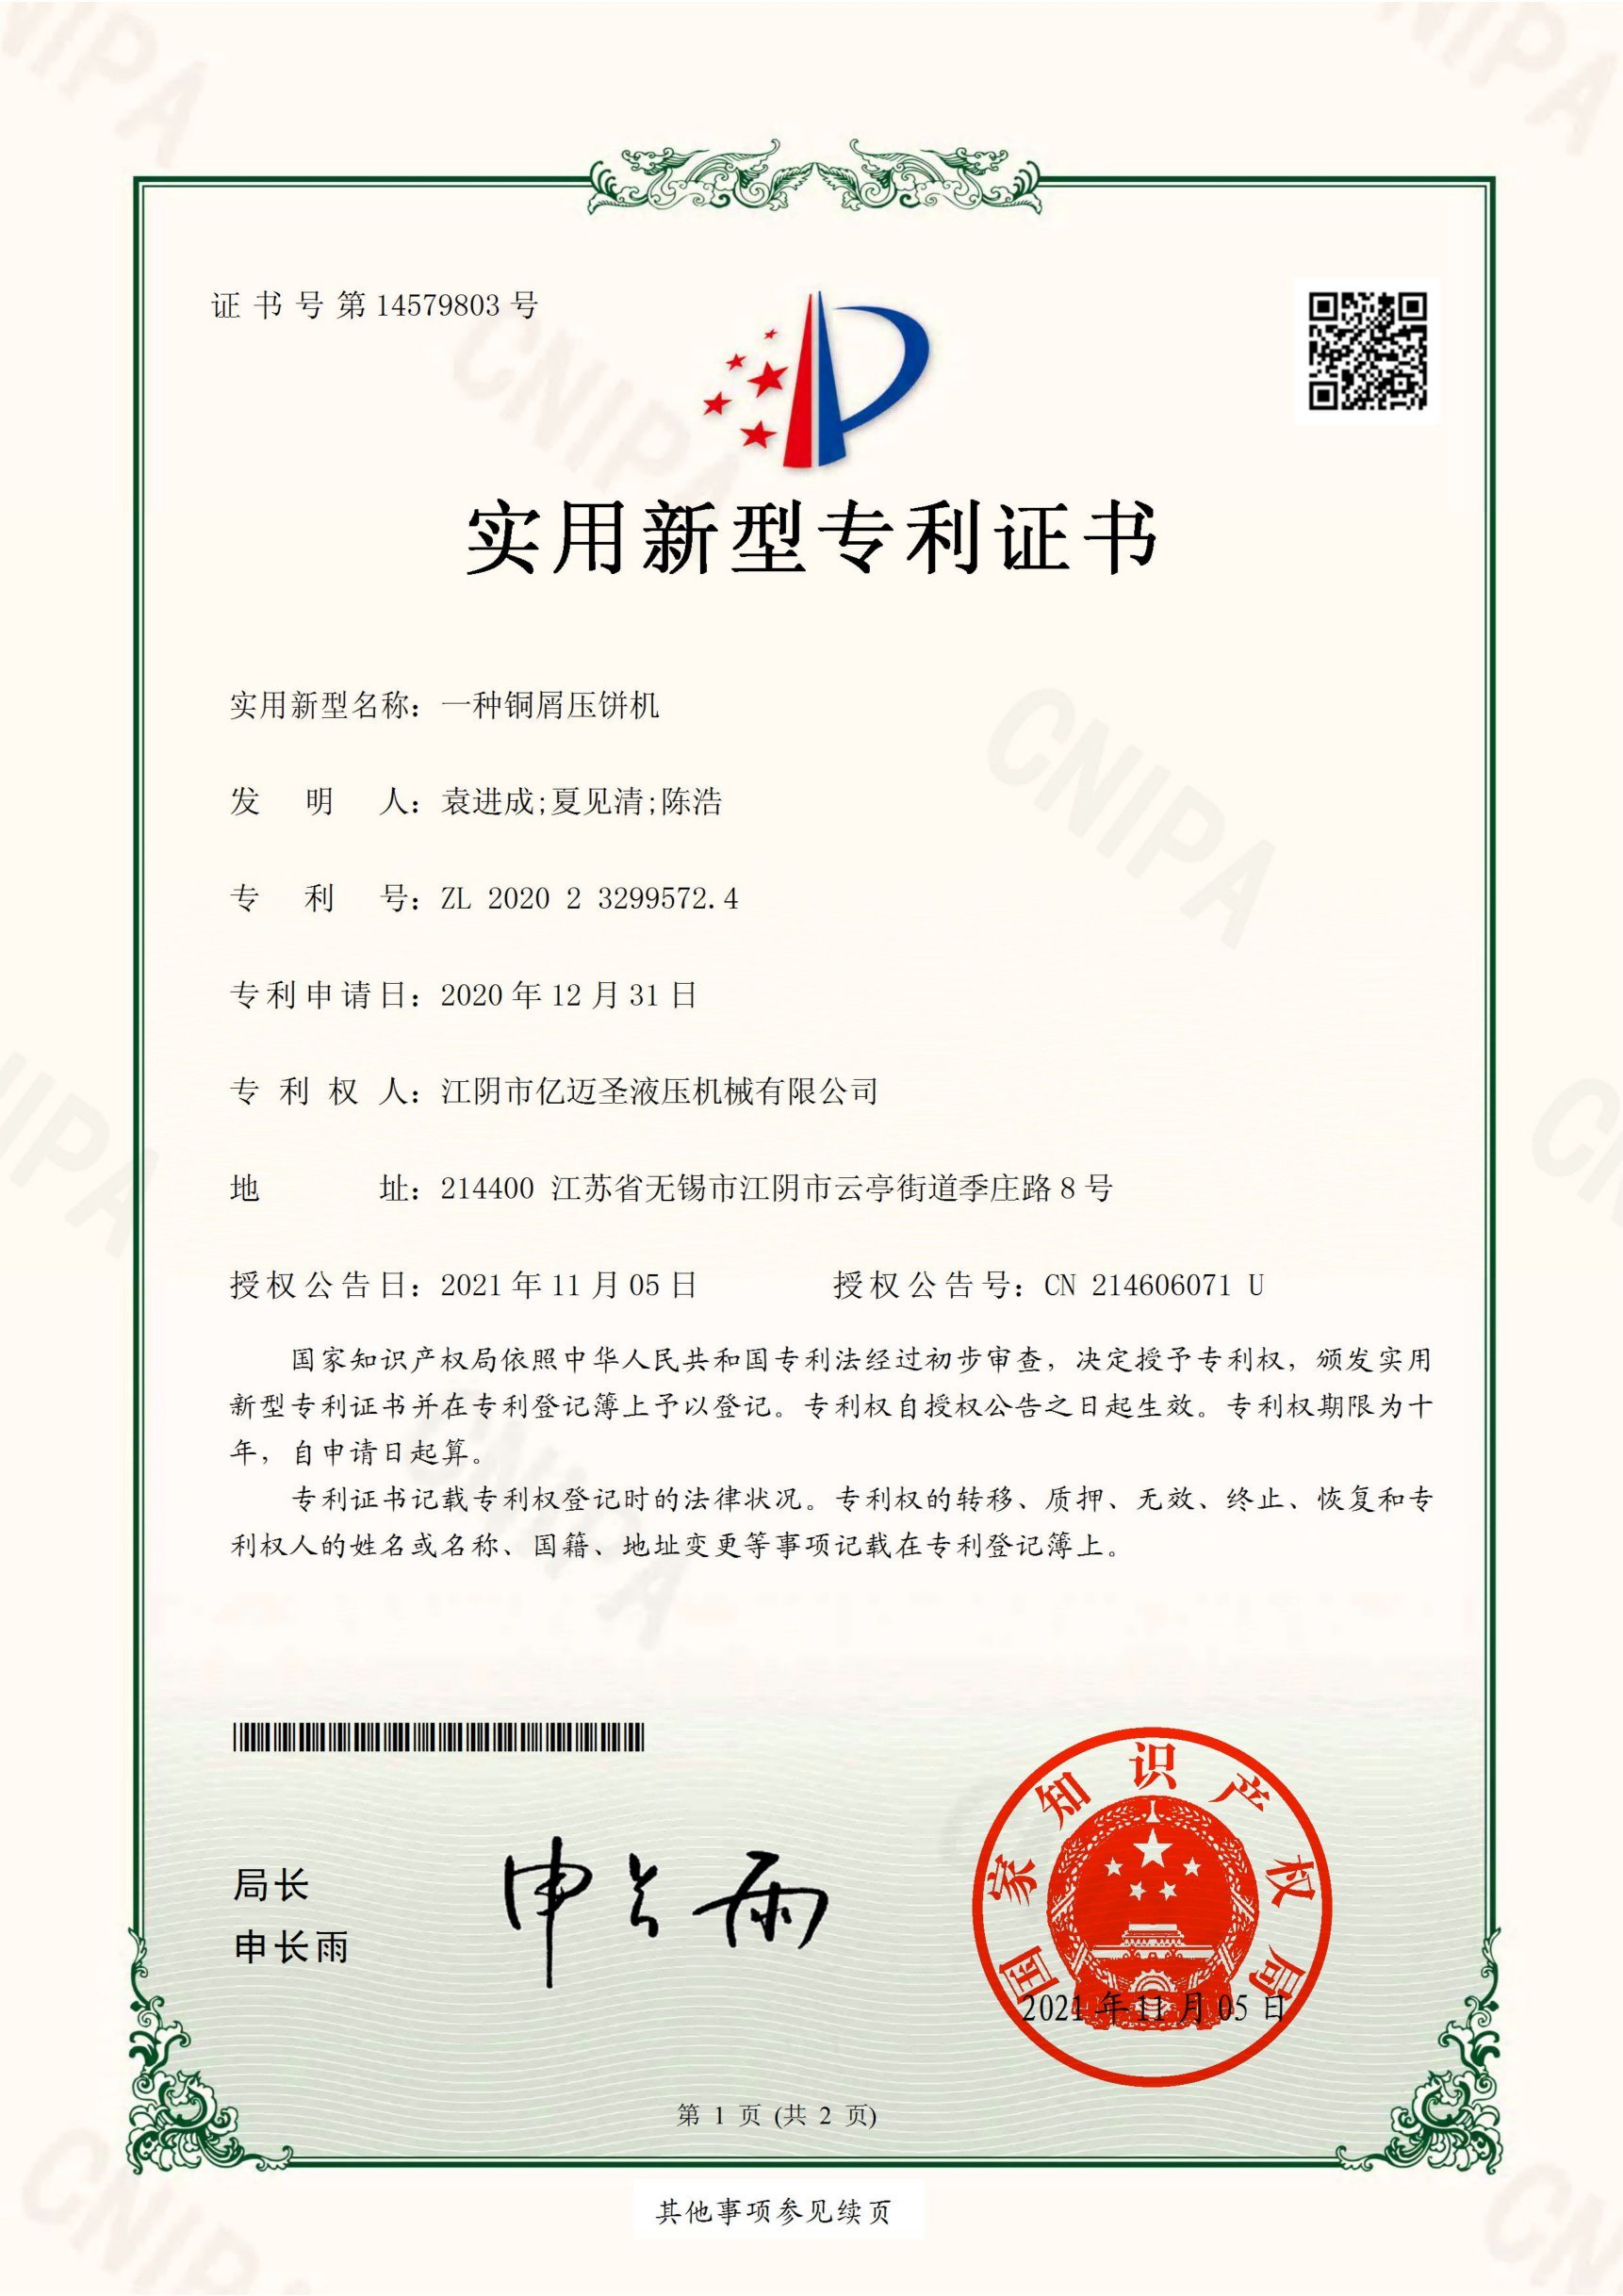 Jiangyin Yimaisheng Hydraulic Machinery Co Ltd